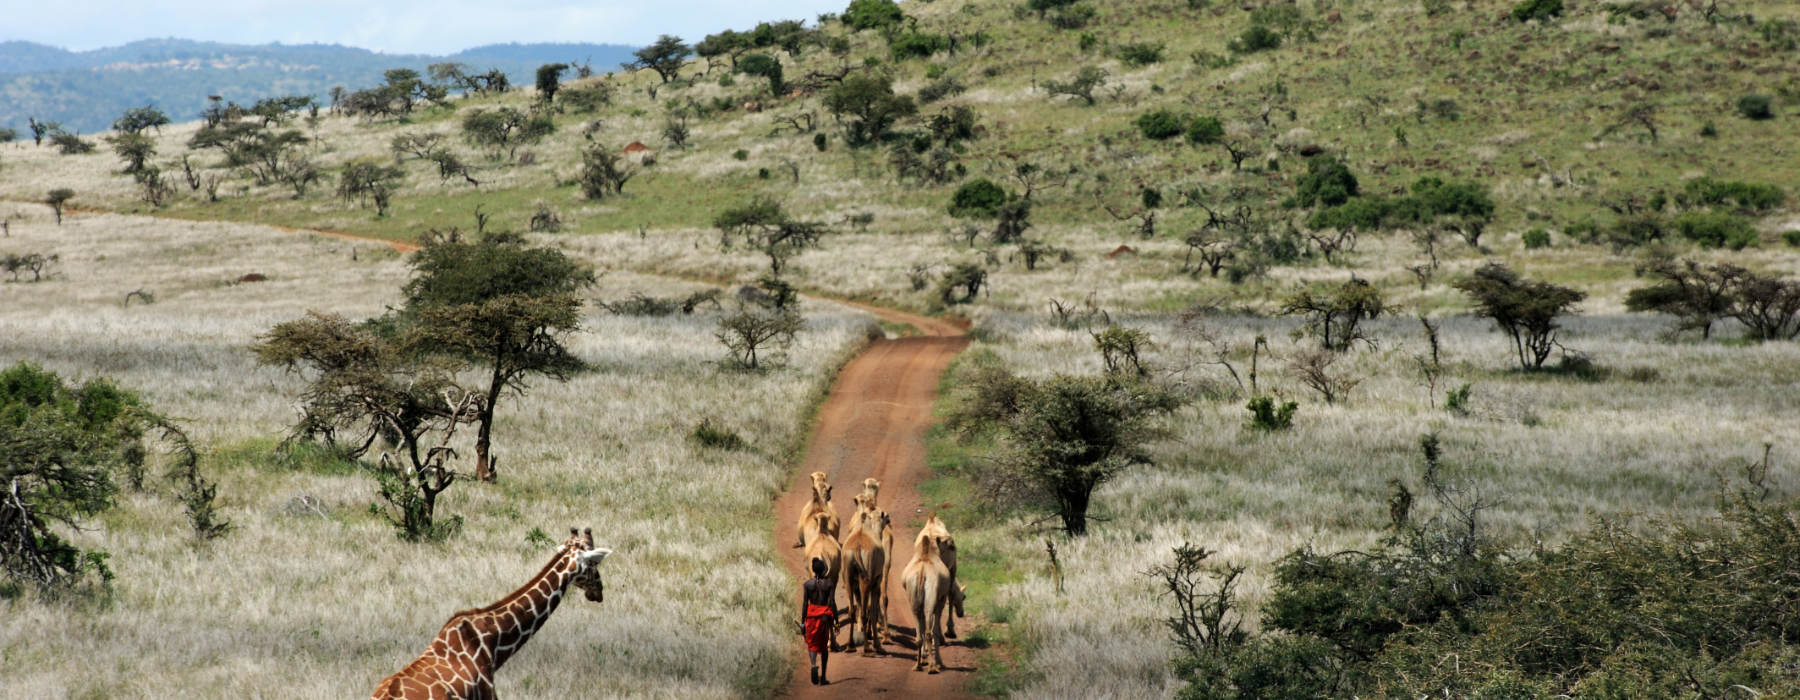 The Masai Mara<br class="hidden-md hidden-lg" /> Holidays